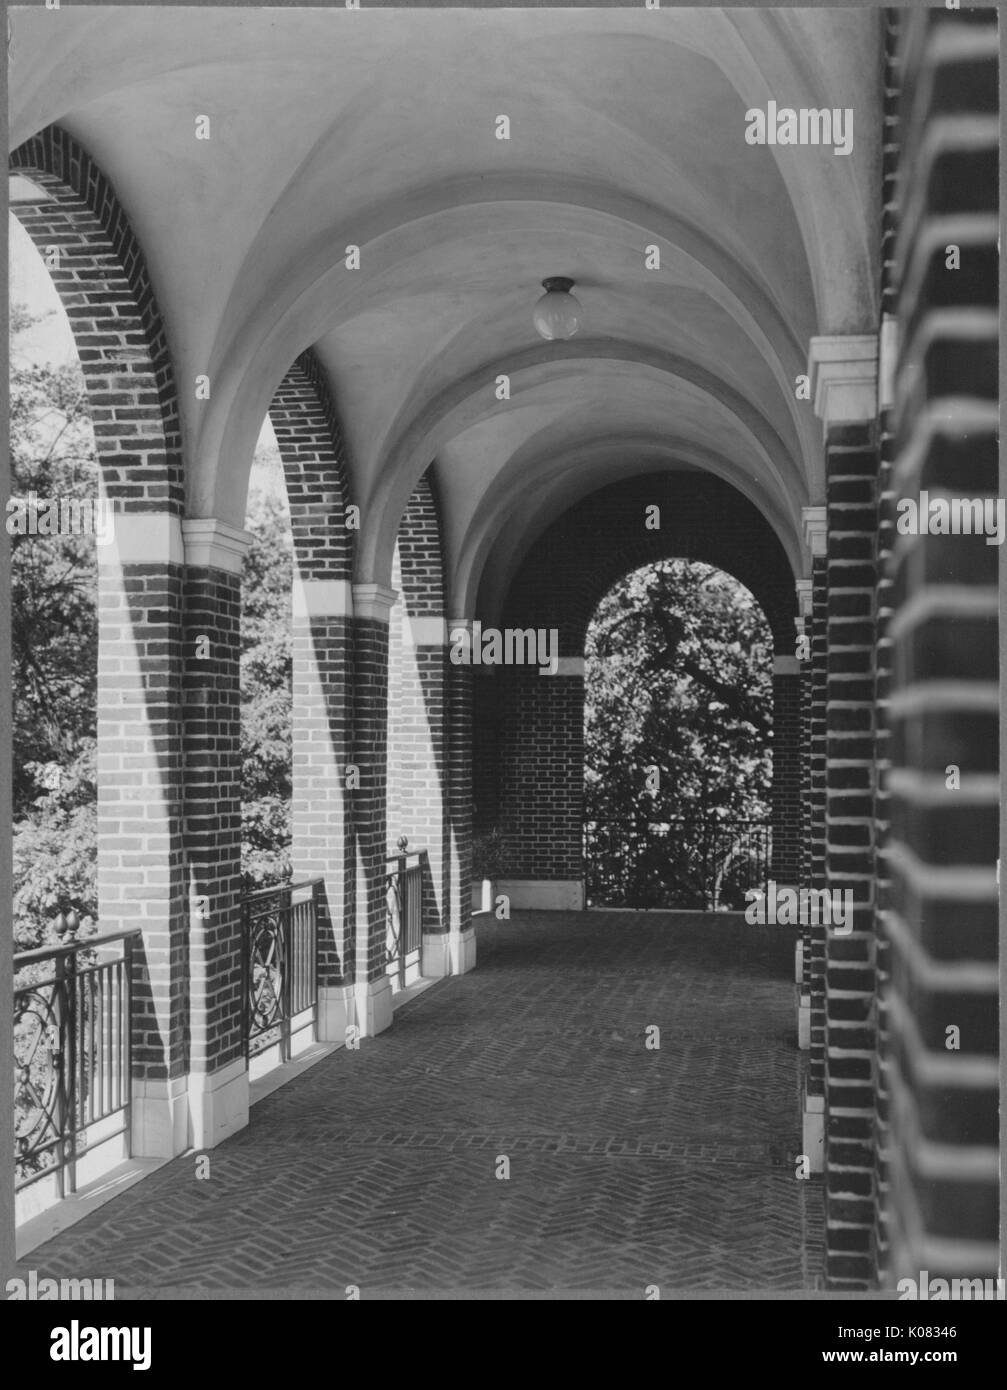 Brick Portico bilden Marmorbögen, mit Geländer entlang der Seite, Bäume im Hintergrund dargestellt; Roland Park/Guilford, 1910. Dieses Bild wird von einer Reihe dokumentieren den Bau und den Verkauf von Wohnungen in der Roland Park/Guilford Nachbarschaft von Baltimore, einer Straßenbahn Vorort und eines der ersten geplanten Gemeinschaften in den Vereinigten Staaten. Stockfoto